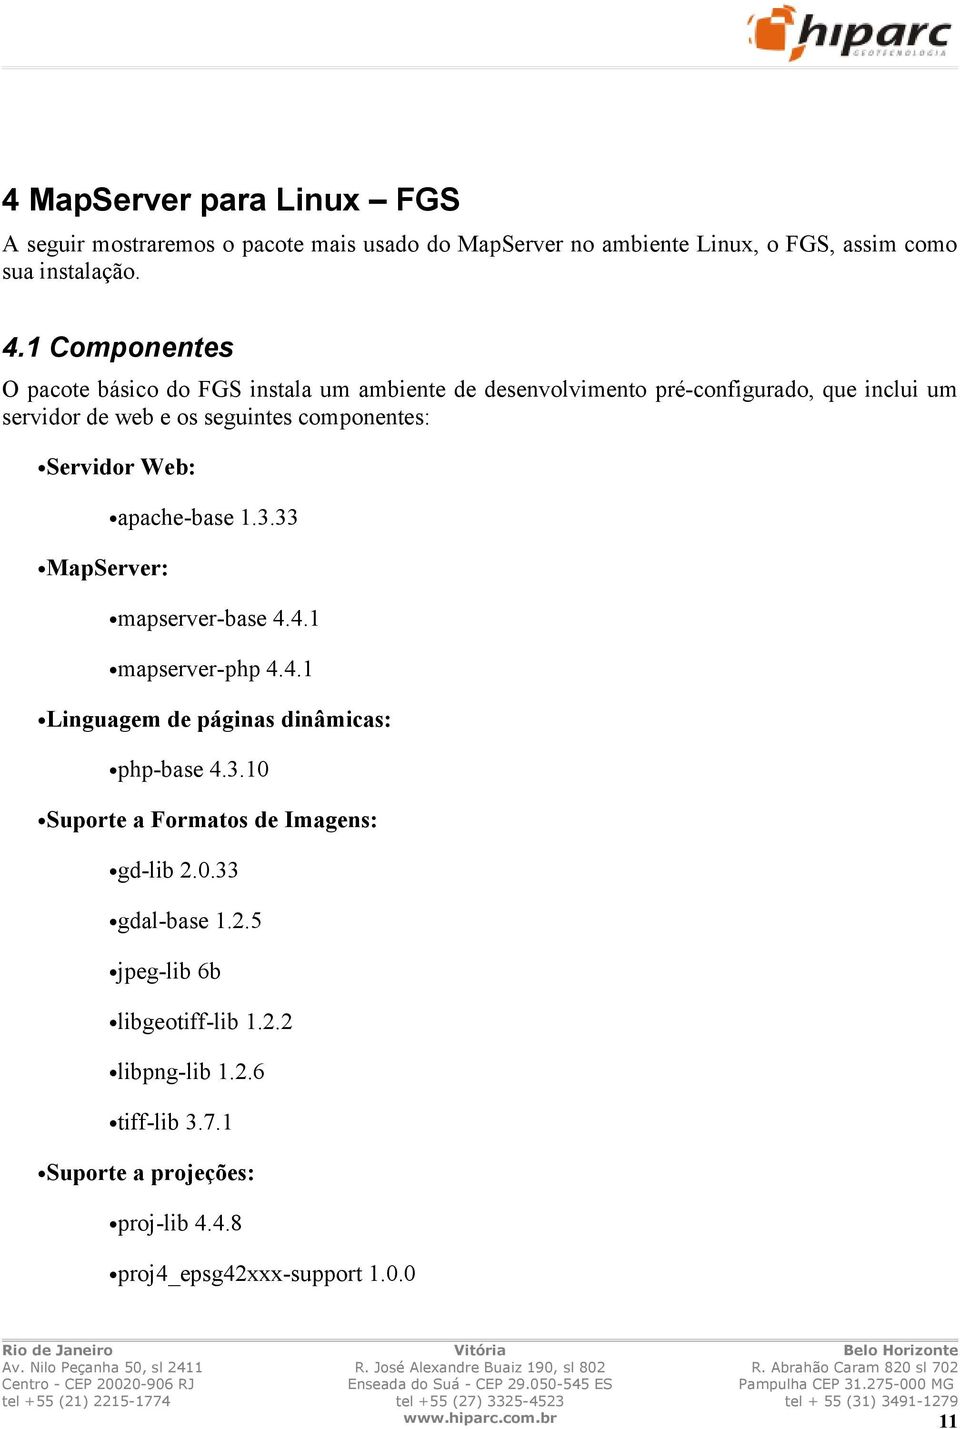 Servidor Web: MapServer: apache-base 1.3.33 mapserver-base 4.4.1 mapserver-php 4.4.1 Linguagem de páginas dinâmicas: php-base 4.3.10 Suporte a Formatos de Imagens: gd-lib 2.